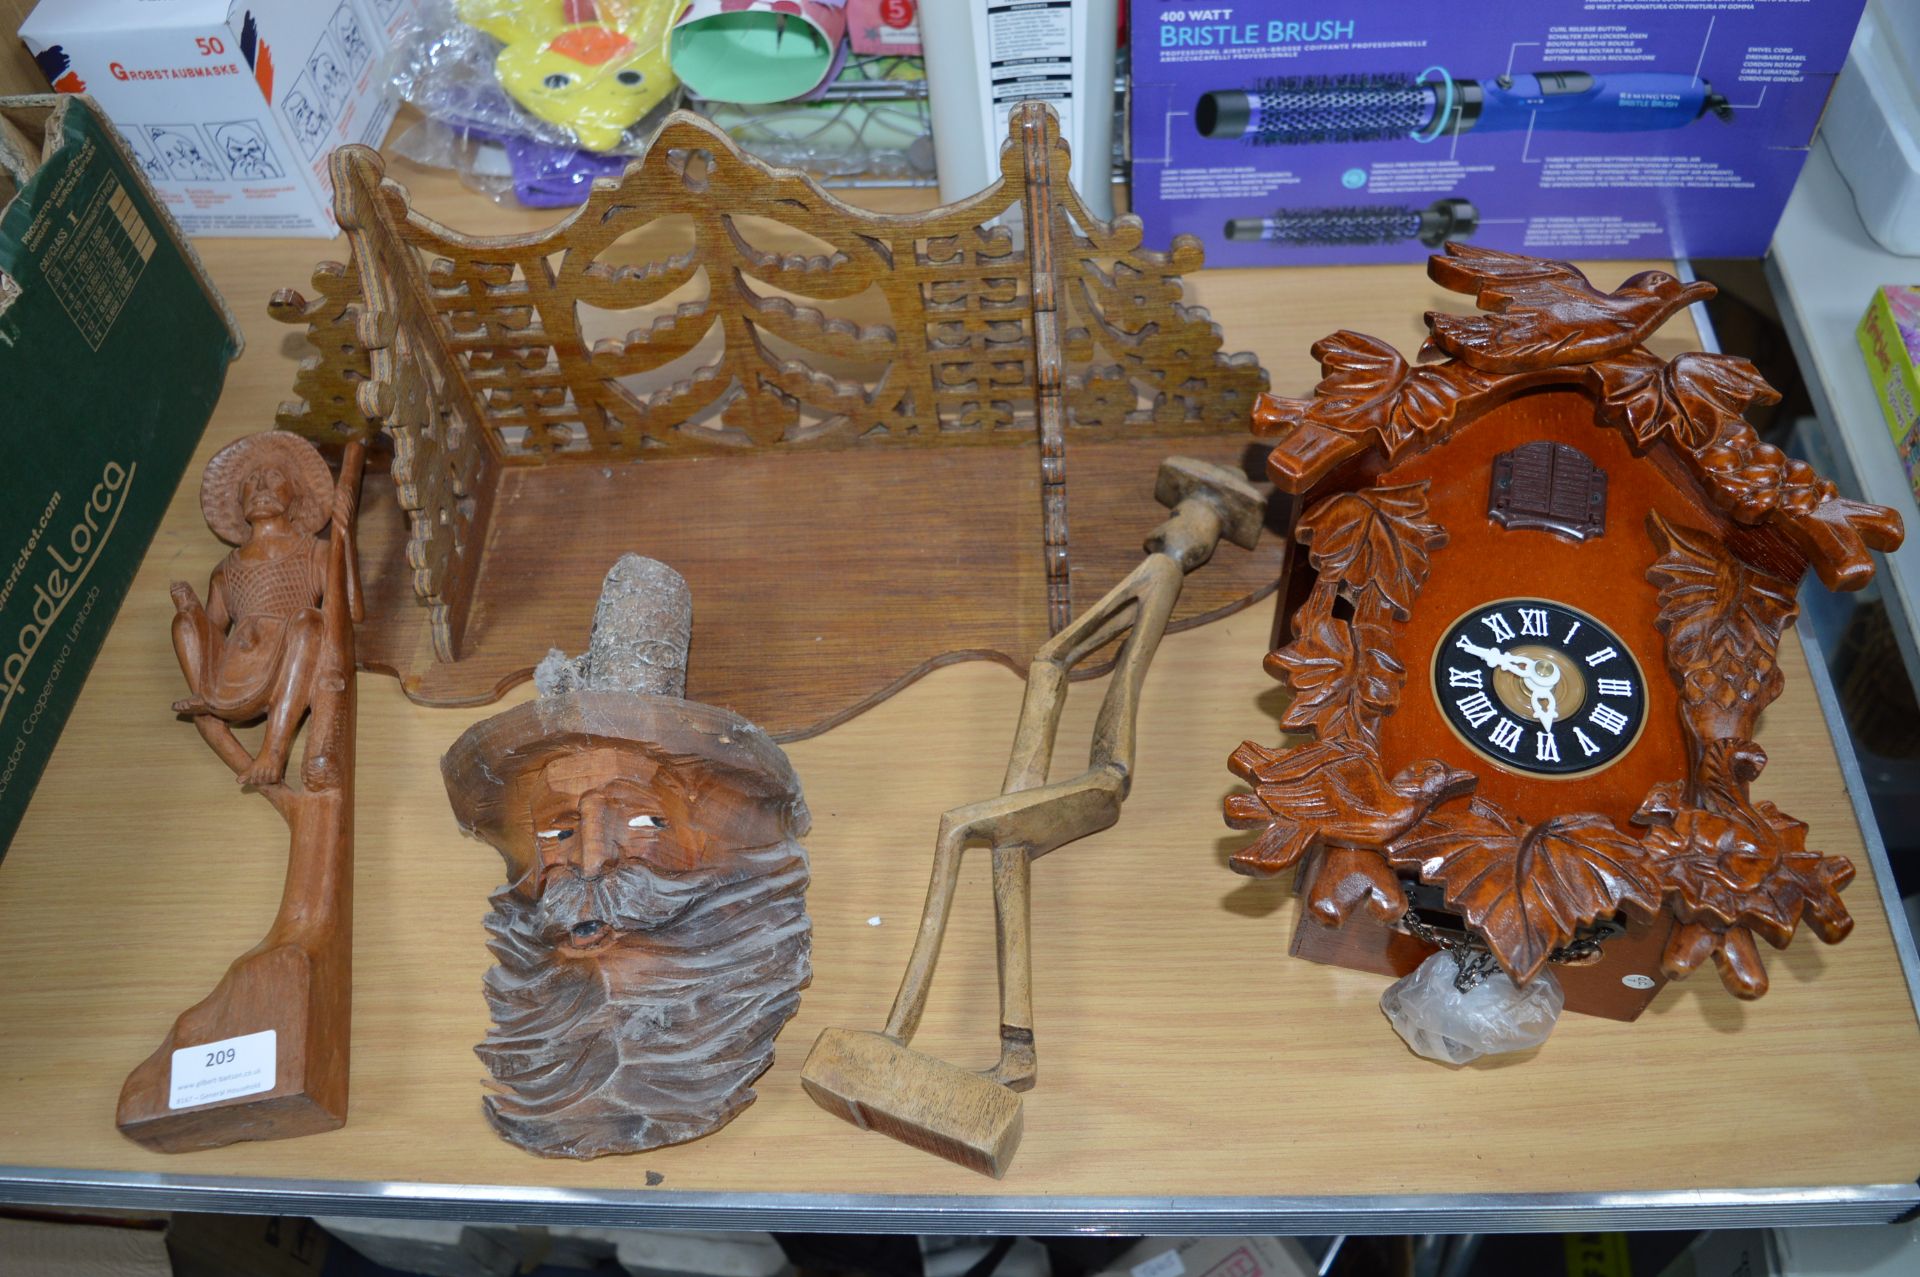 Cuckoo Clock, Wooden Ornaments, etc.